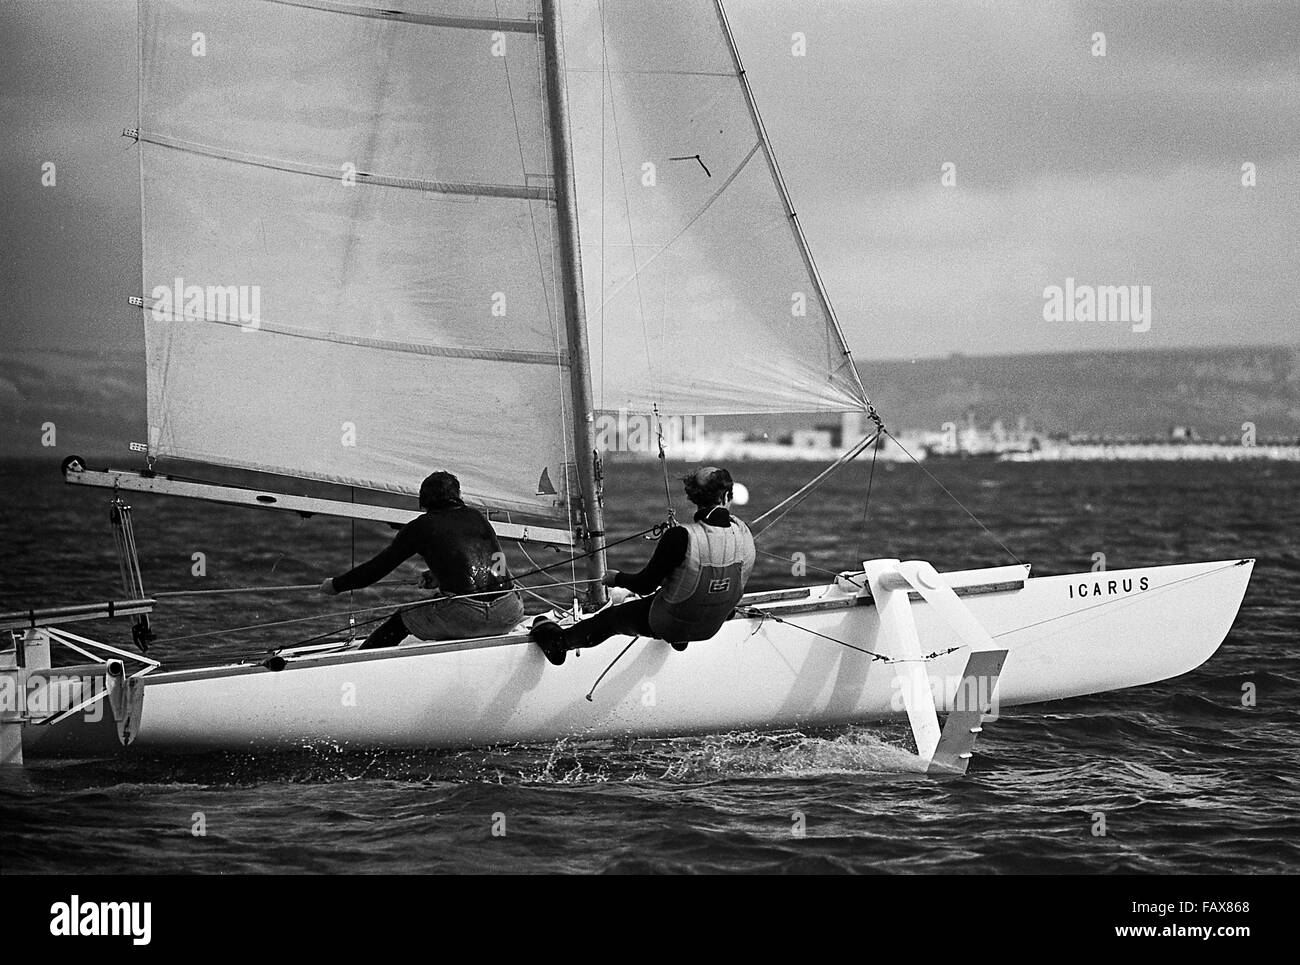 AJAXNETPHOTO. - 29 Oct, 1976. PORTLAND, Inglaterra. - Velocidad de Weymouth semana - catamarán hidroala ICARUS EN VELOCIDAD EN PORTLAND Harbour. Foto:Jonathan EASTLAND/AJAX REF:7629101 35188 Foto de stock